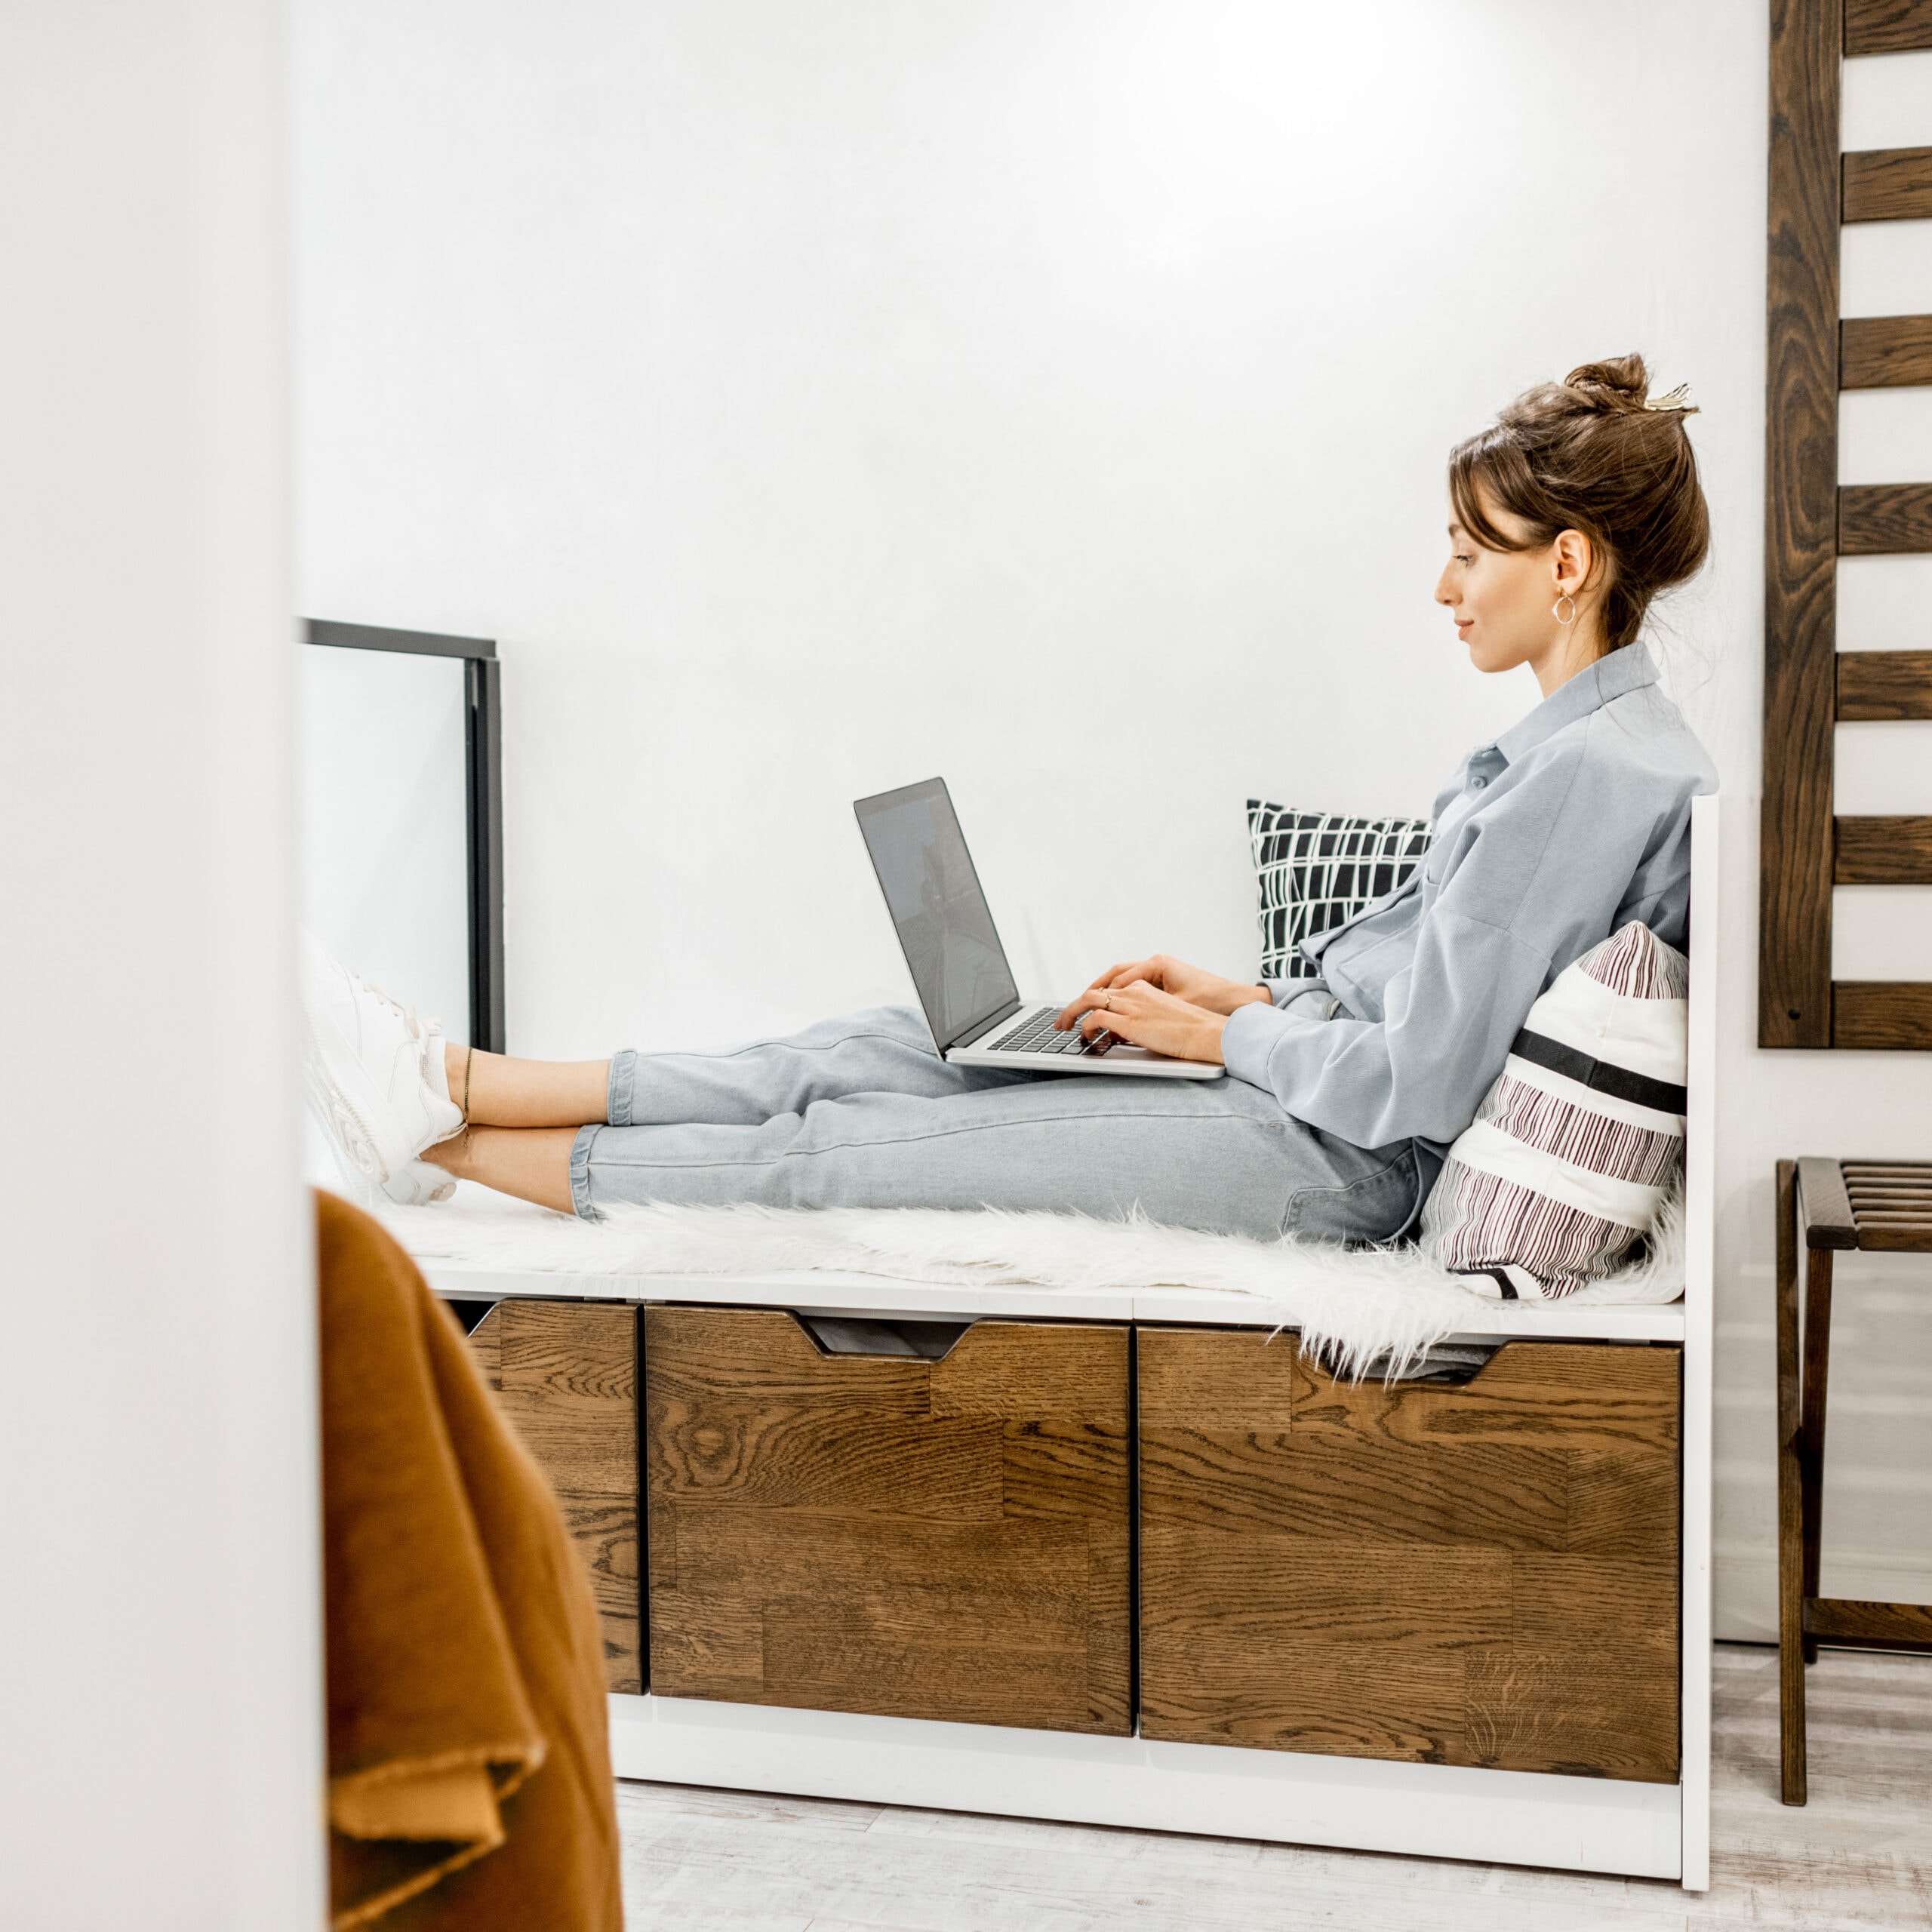 Asistente virtual escribiendo en una computadora portátil, sentada en un banco en su departamento